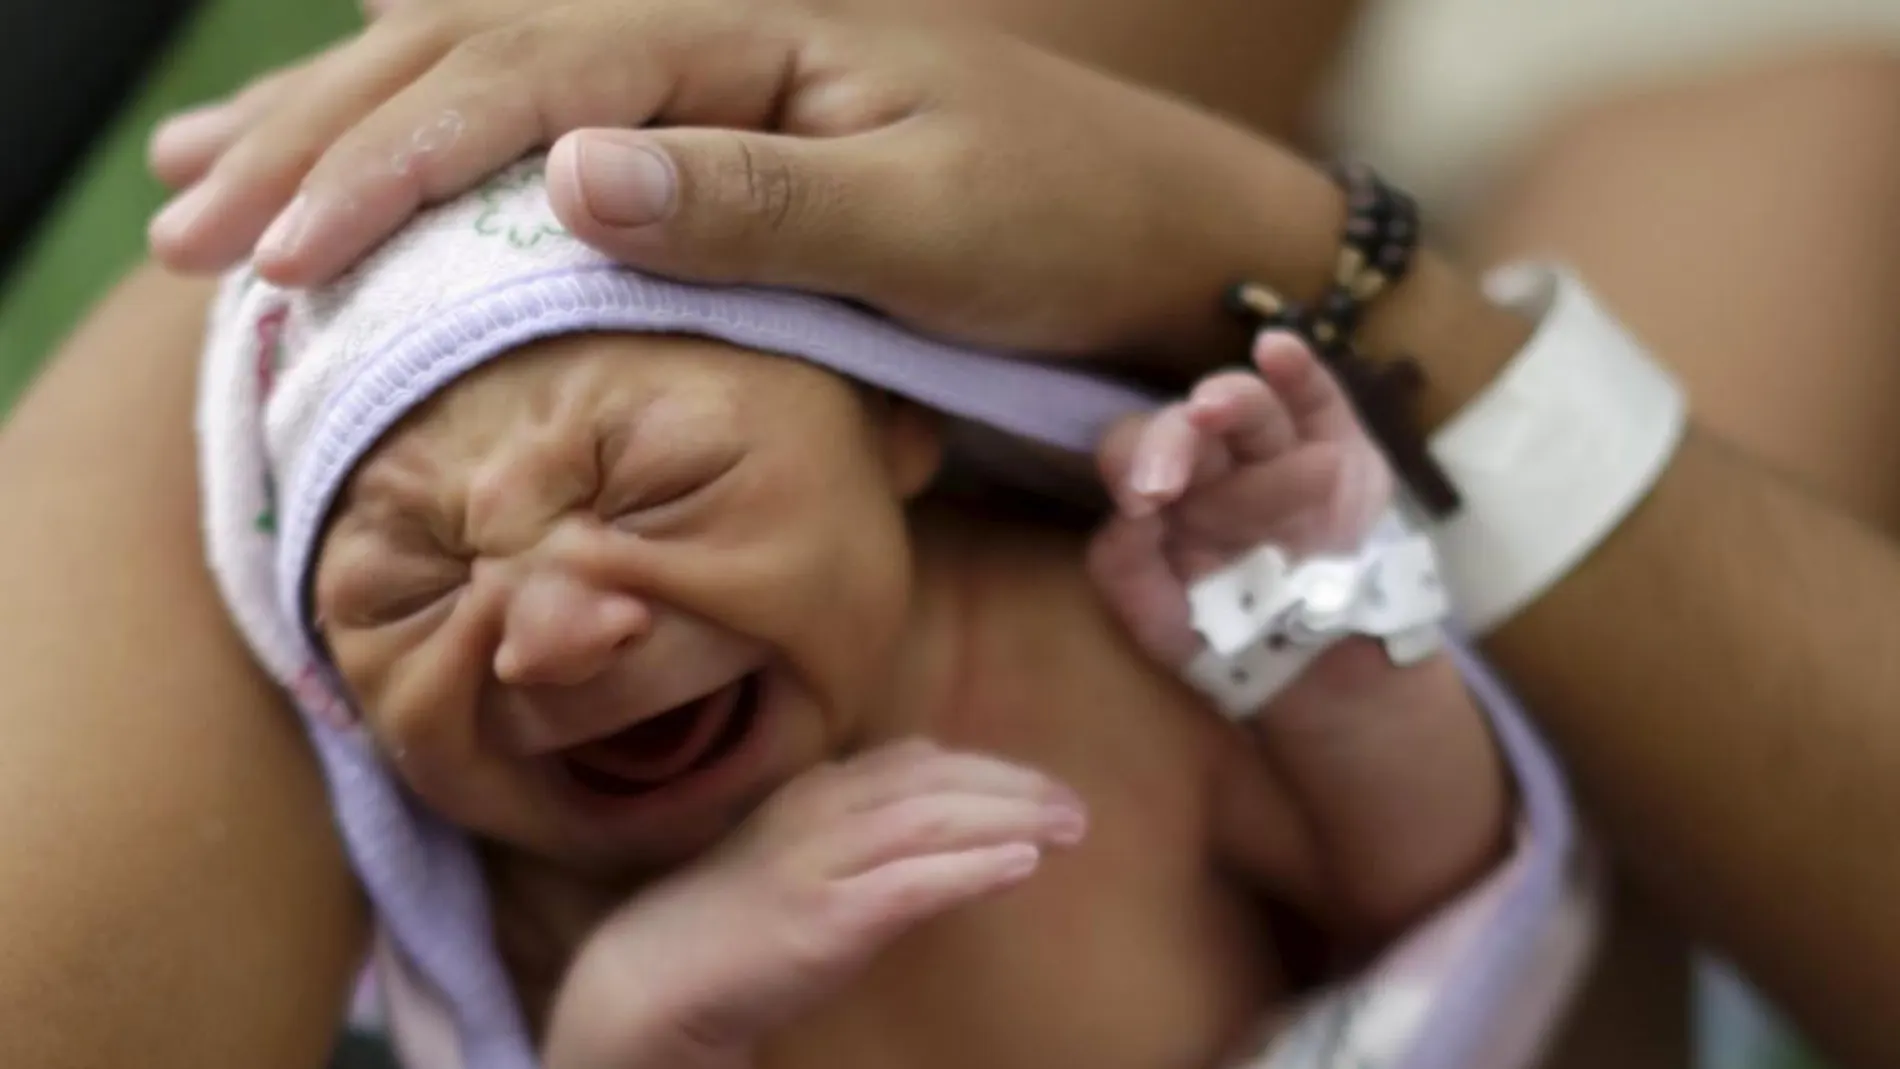 Un bebé con microencefalia